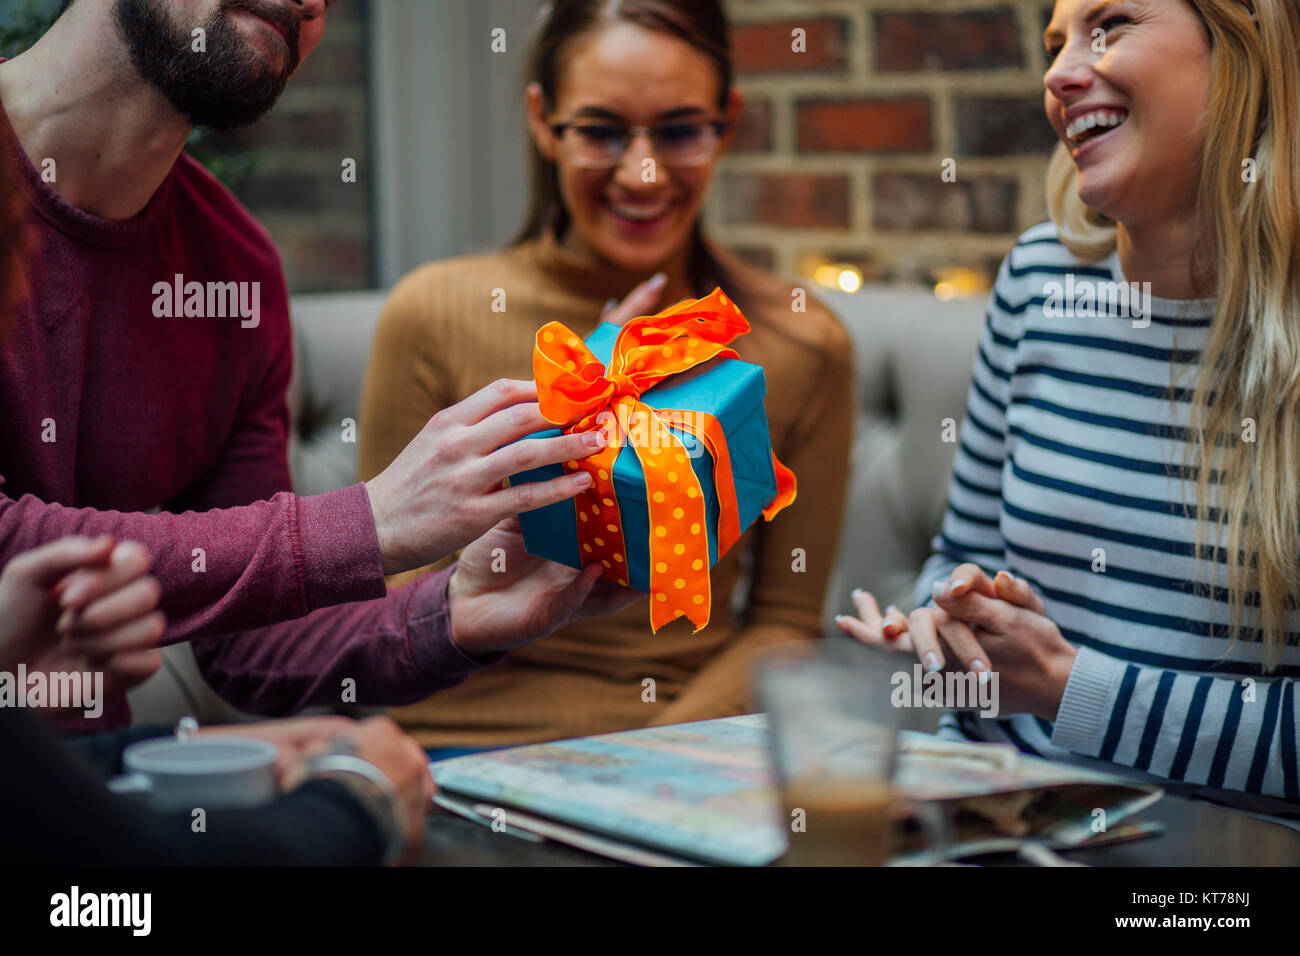 Immagine ravvicinata di un uomo che passa un regalo di compleanno per il suo amico alla sua festa di compleanno. Foto Stock